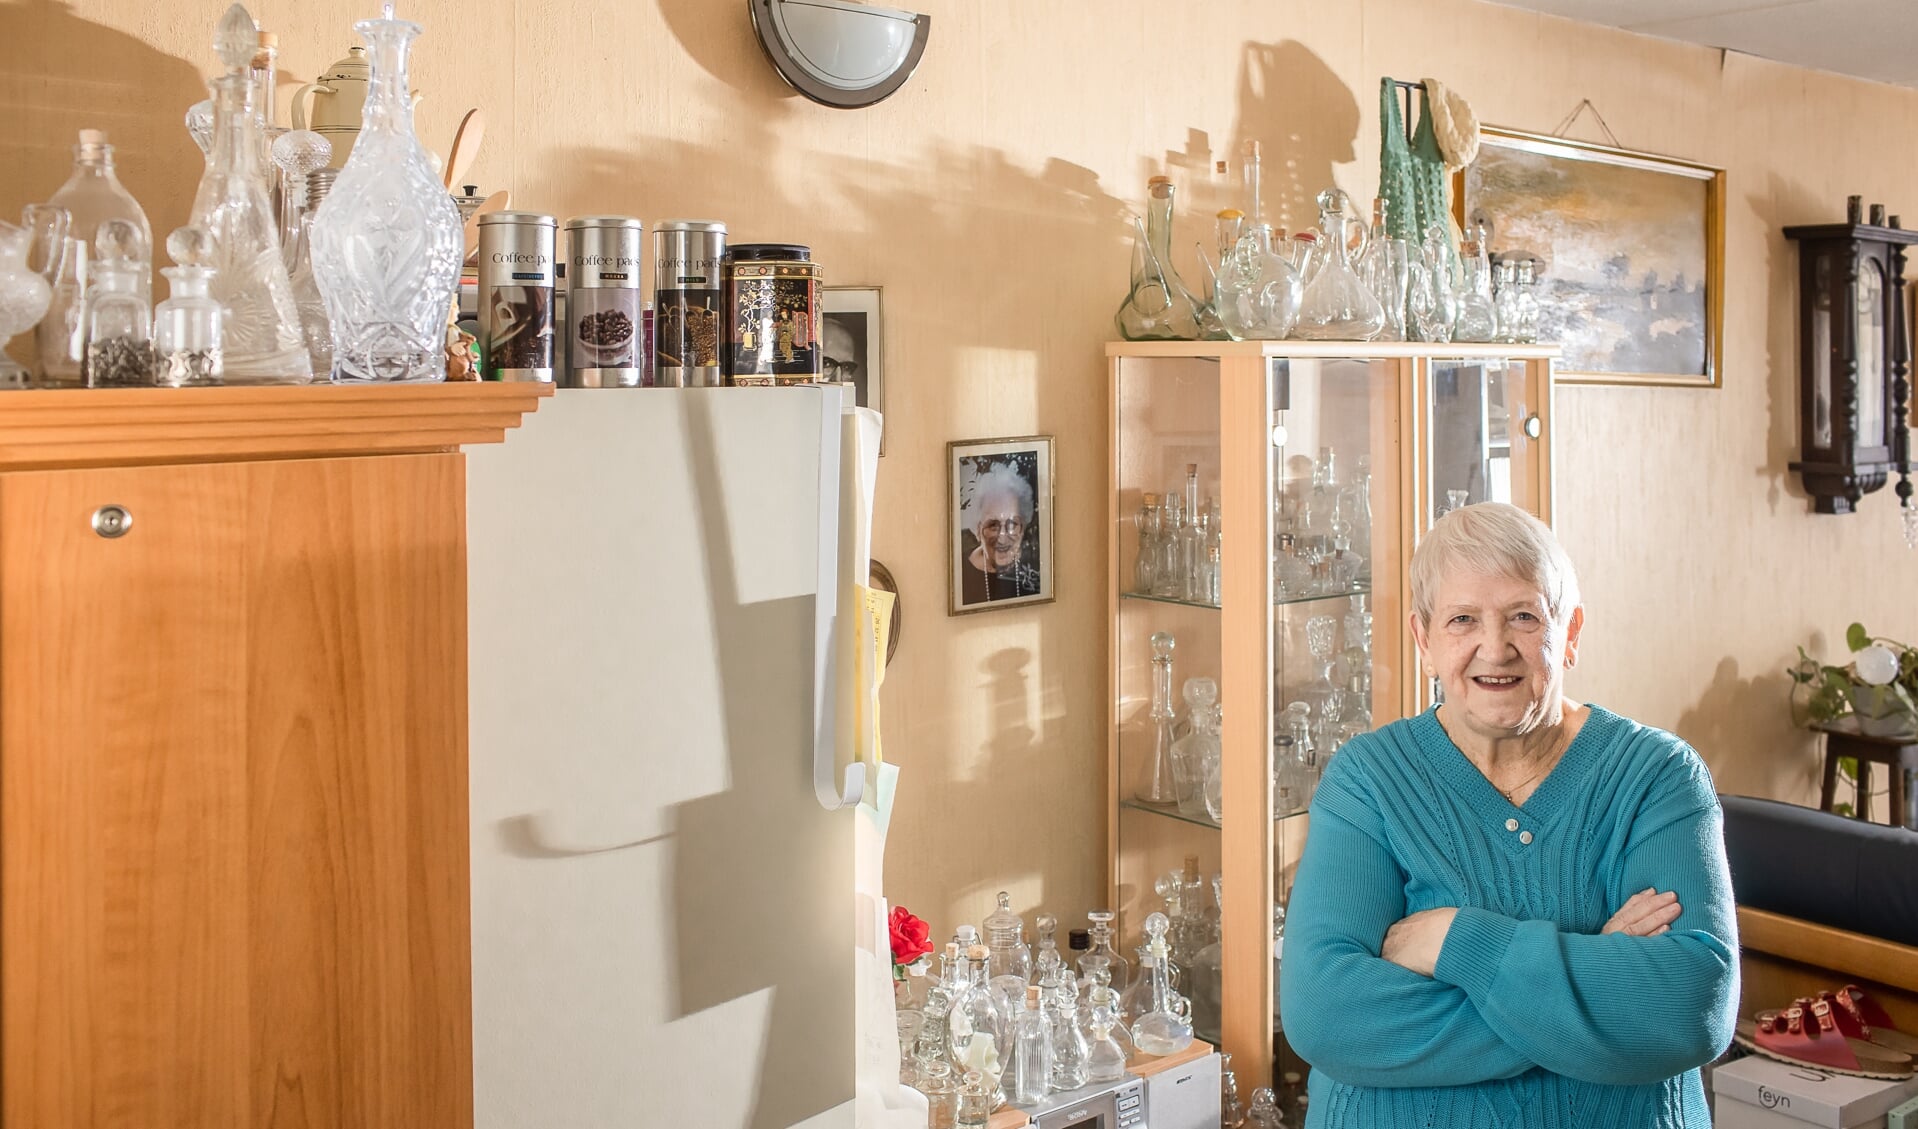 Bets ten Broek in haar woonkamer tussen de flesjes van witglas.